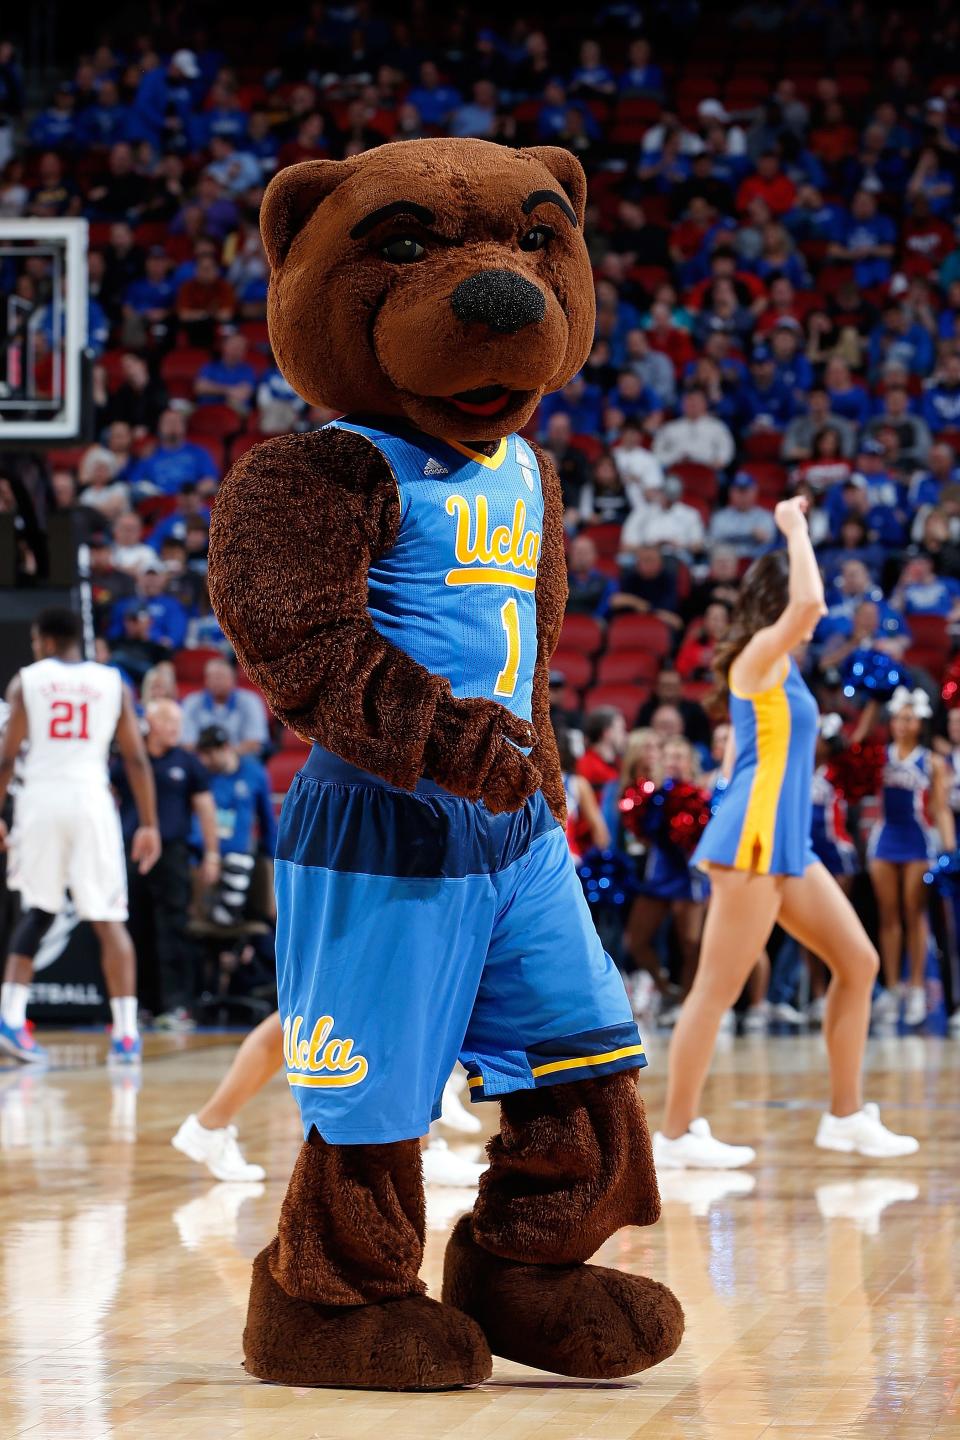 The UCLA Bruins mascot